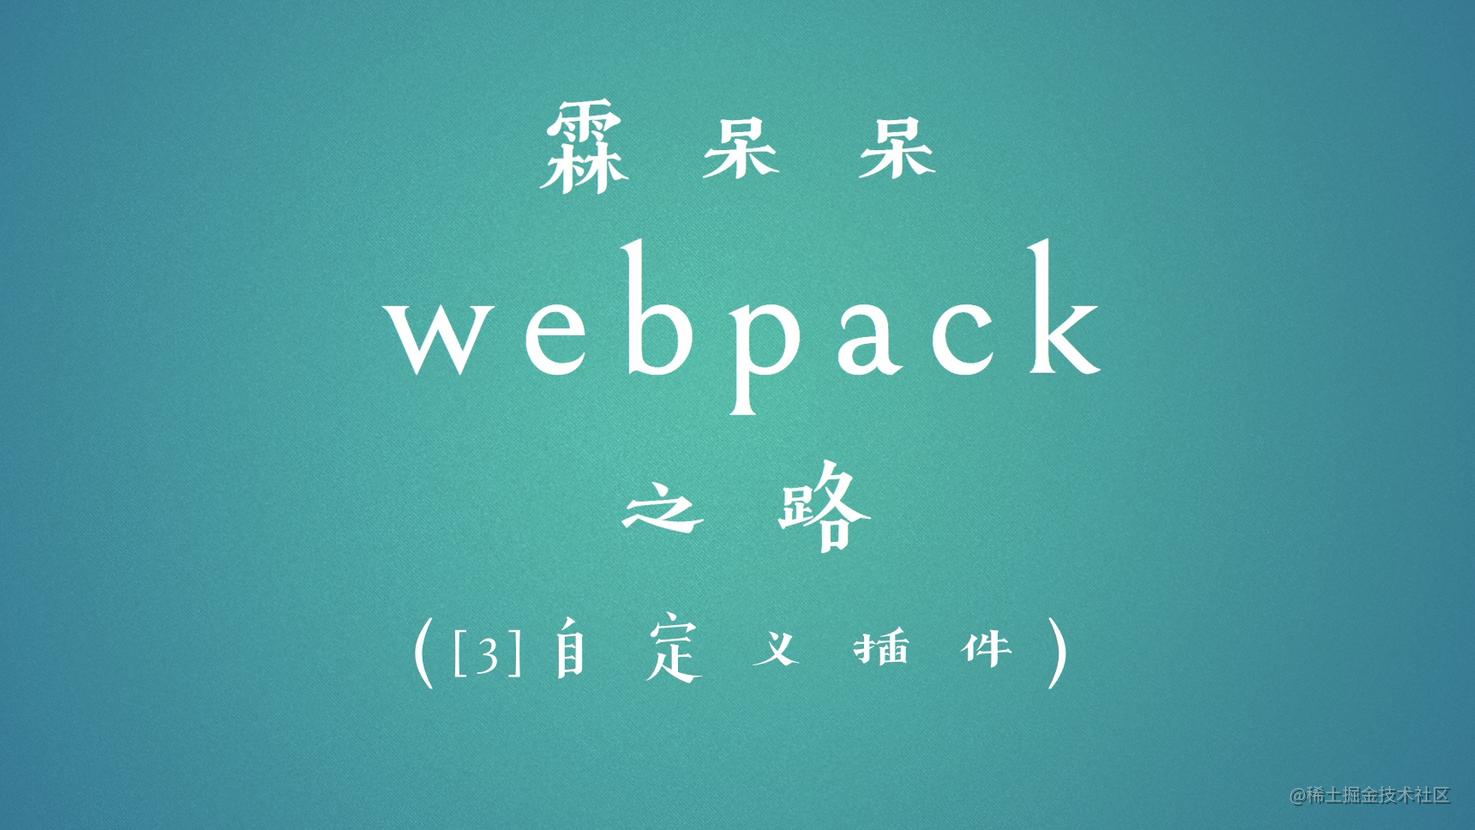 霖呆呆的六个自定义Webpack插件详解-自定义plugin篇(3)